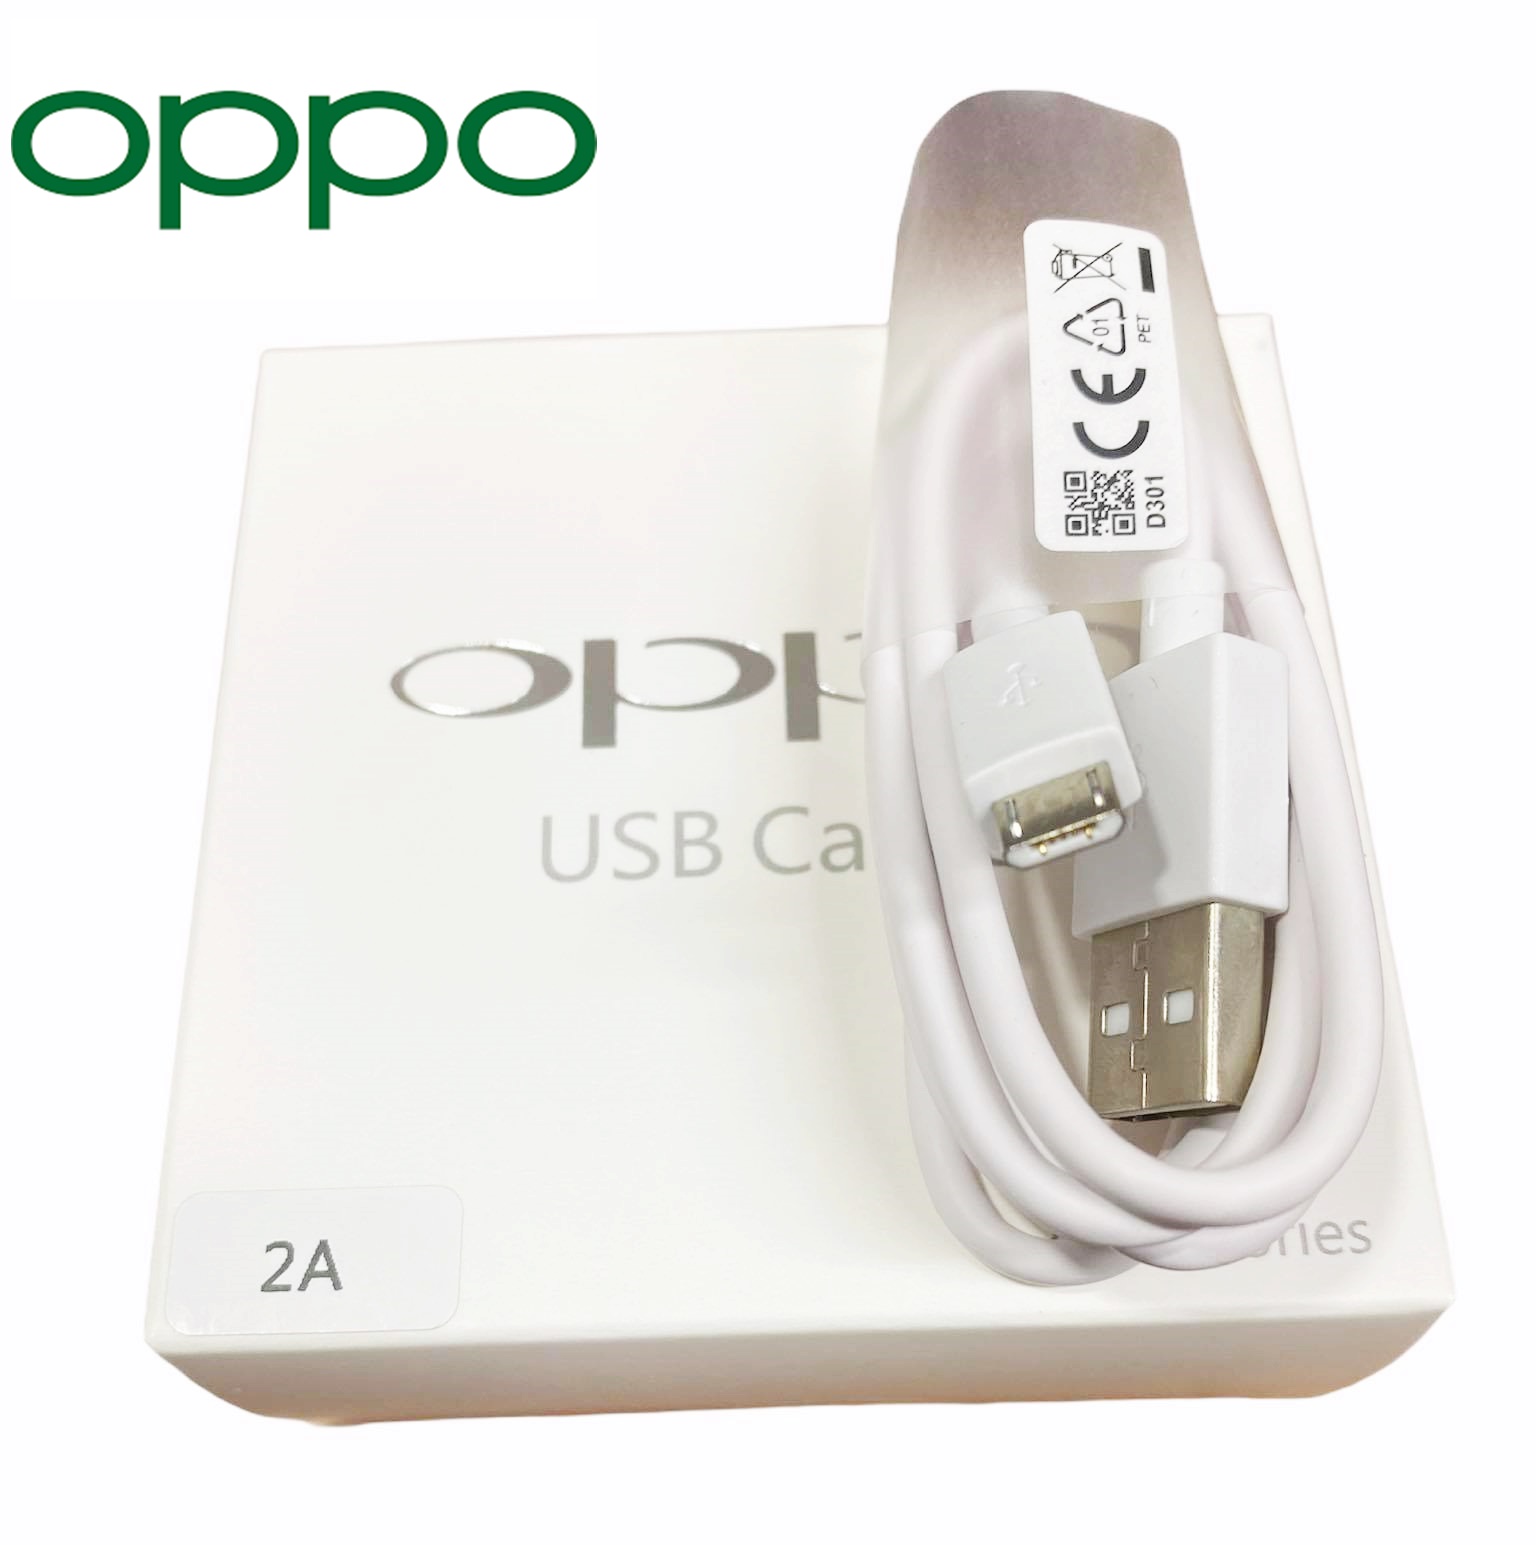 สายชาร์จแท้ OPPO ชาร์จเต็มแอมป์ ใช้ได้เช่น  F5/F7/A3S/A31/A37/A5S/F1/A7 A37,A71,A83,A57,A77,A3S,A5S,A1K และอีกหลายรุ่นที่รองรับ หัว Micro USB